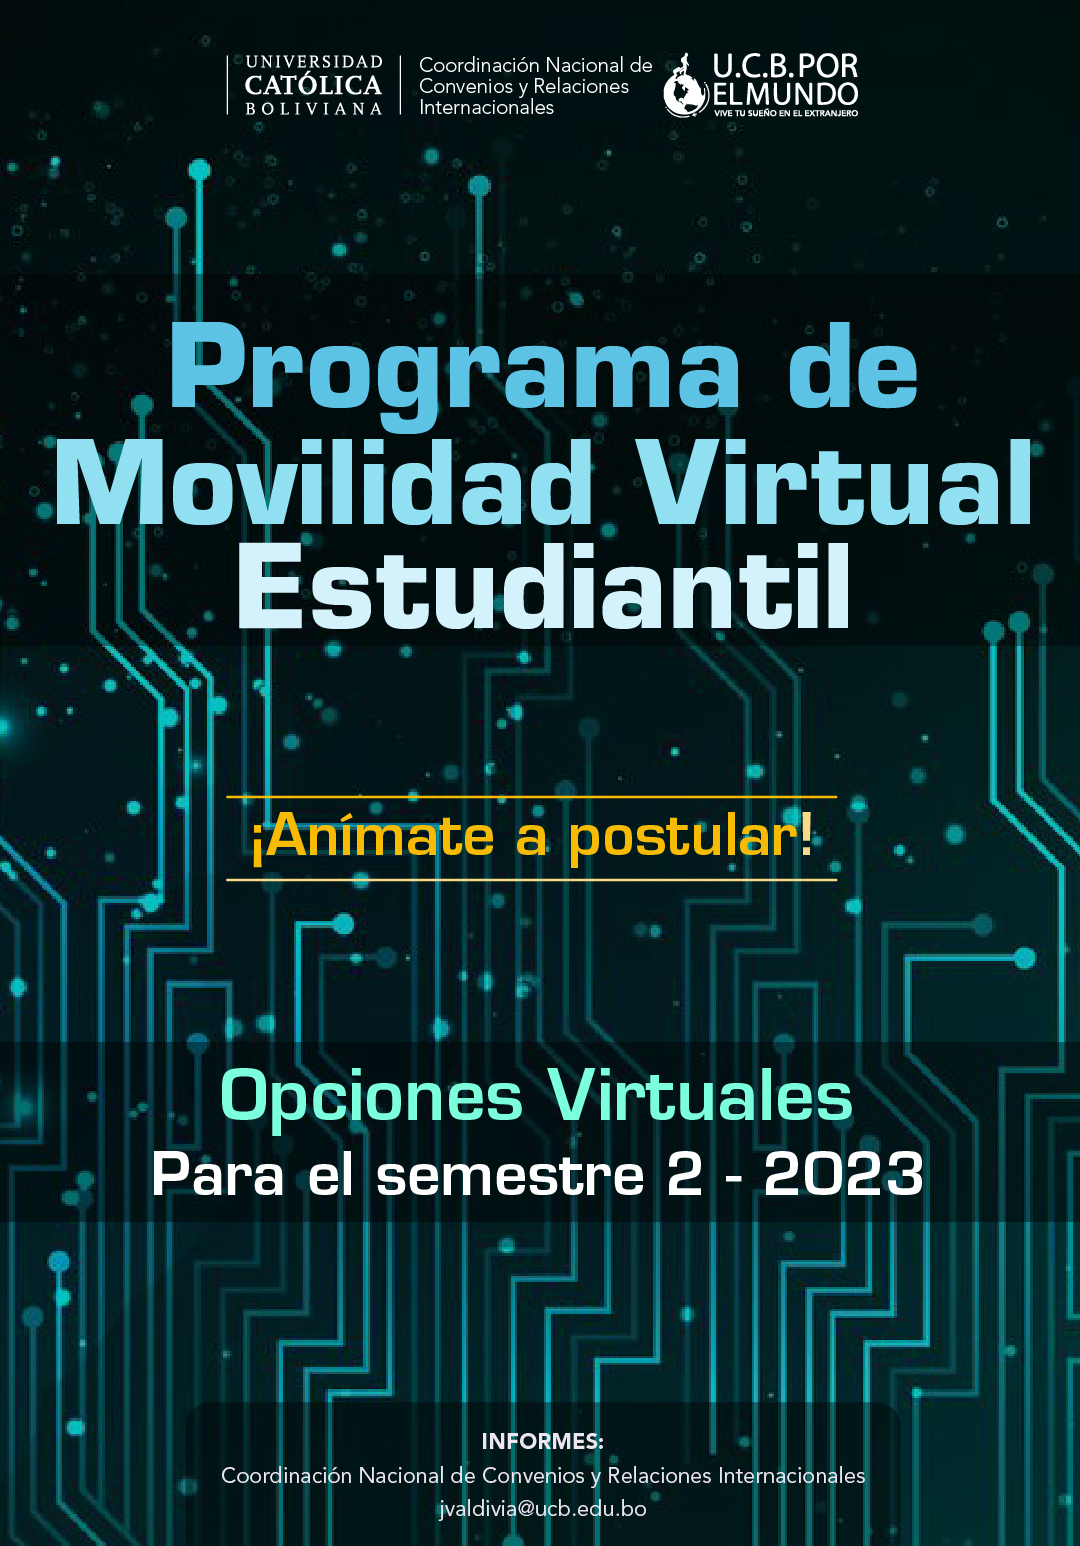 ¡El Programa Virtual de Movilidad Estudiantil UCB por el Mundo esta con la convocatoria abierta para el 2-2023!